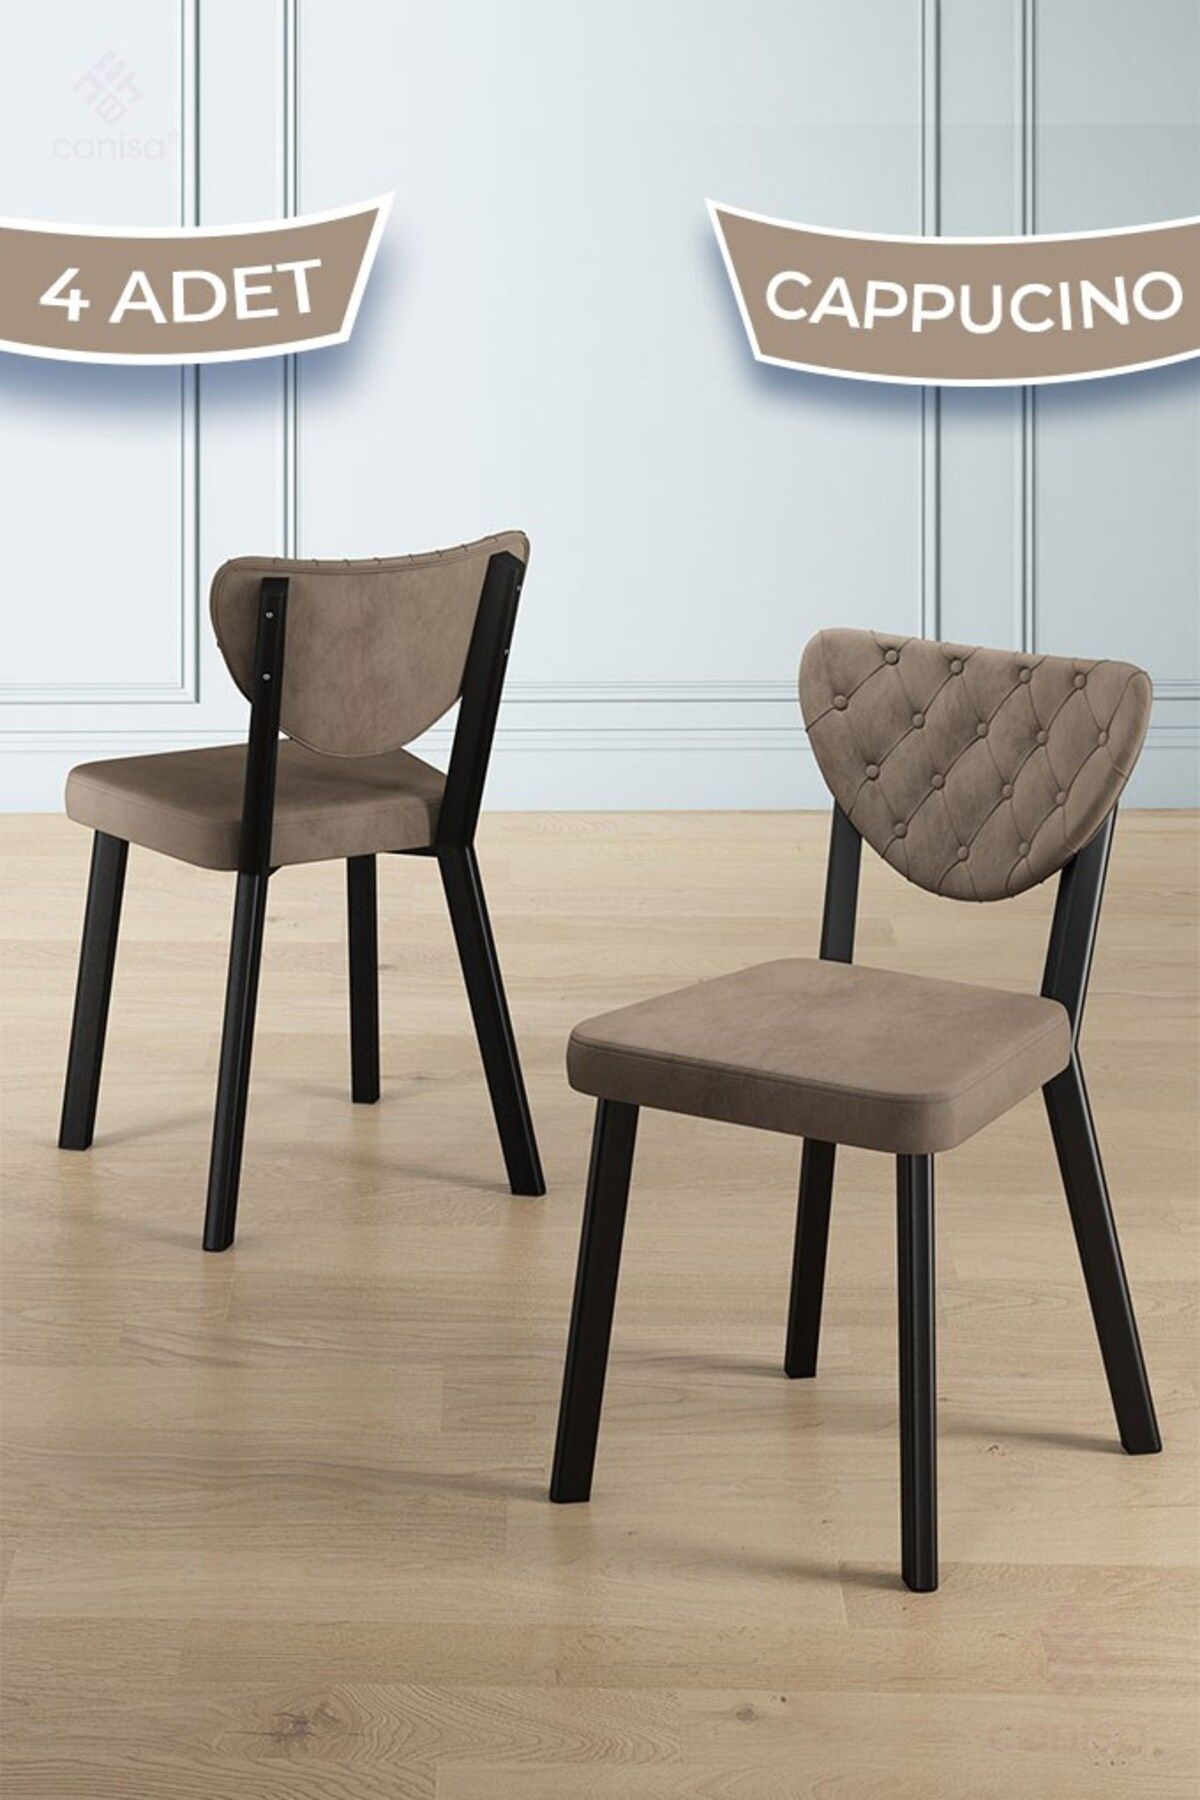 Canisa Alse Serisi 4 Adet Cappucino Mutfak Sandalyesi Siyah Metal İskeletli 1. Sınıf Babyface Kumaş